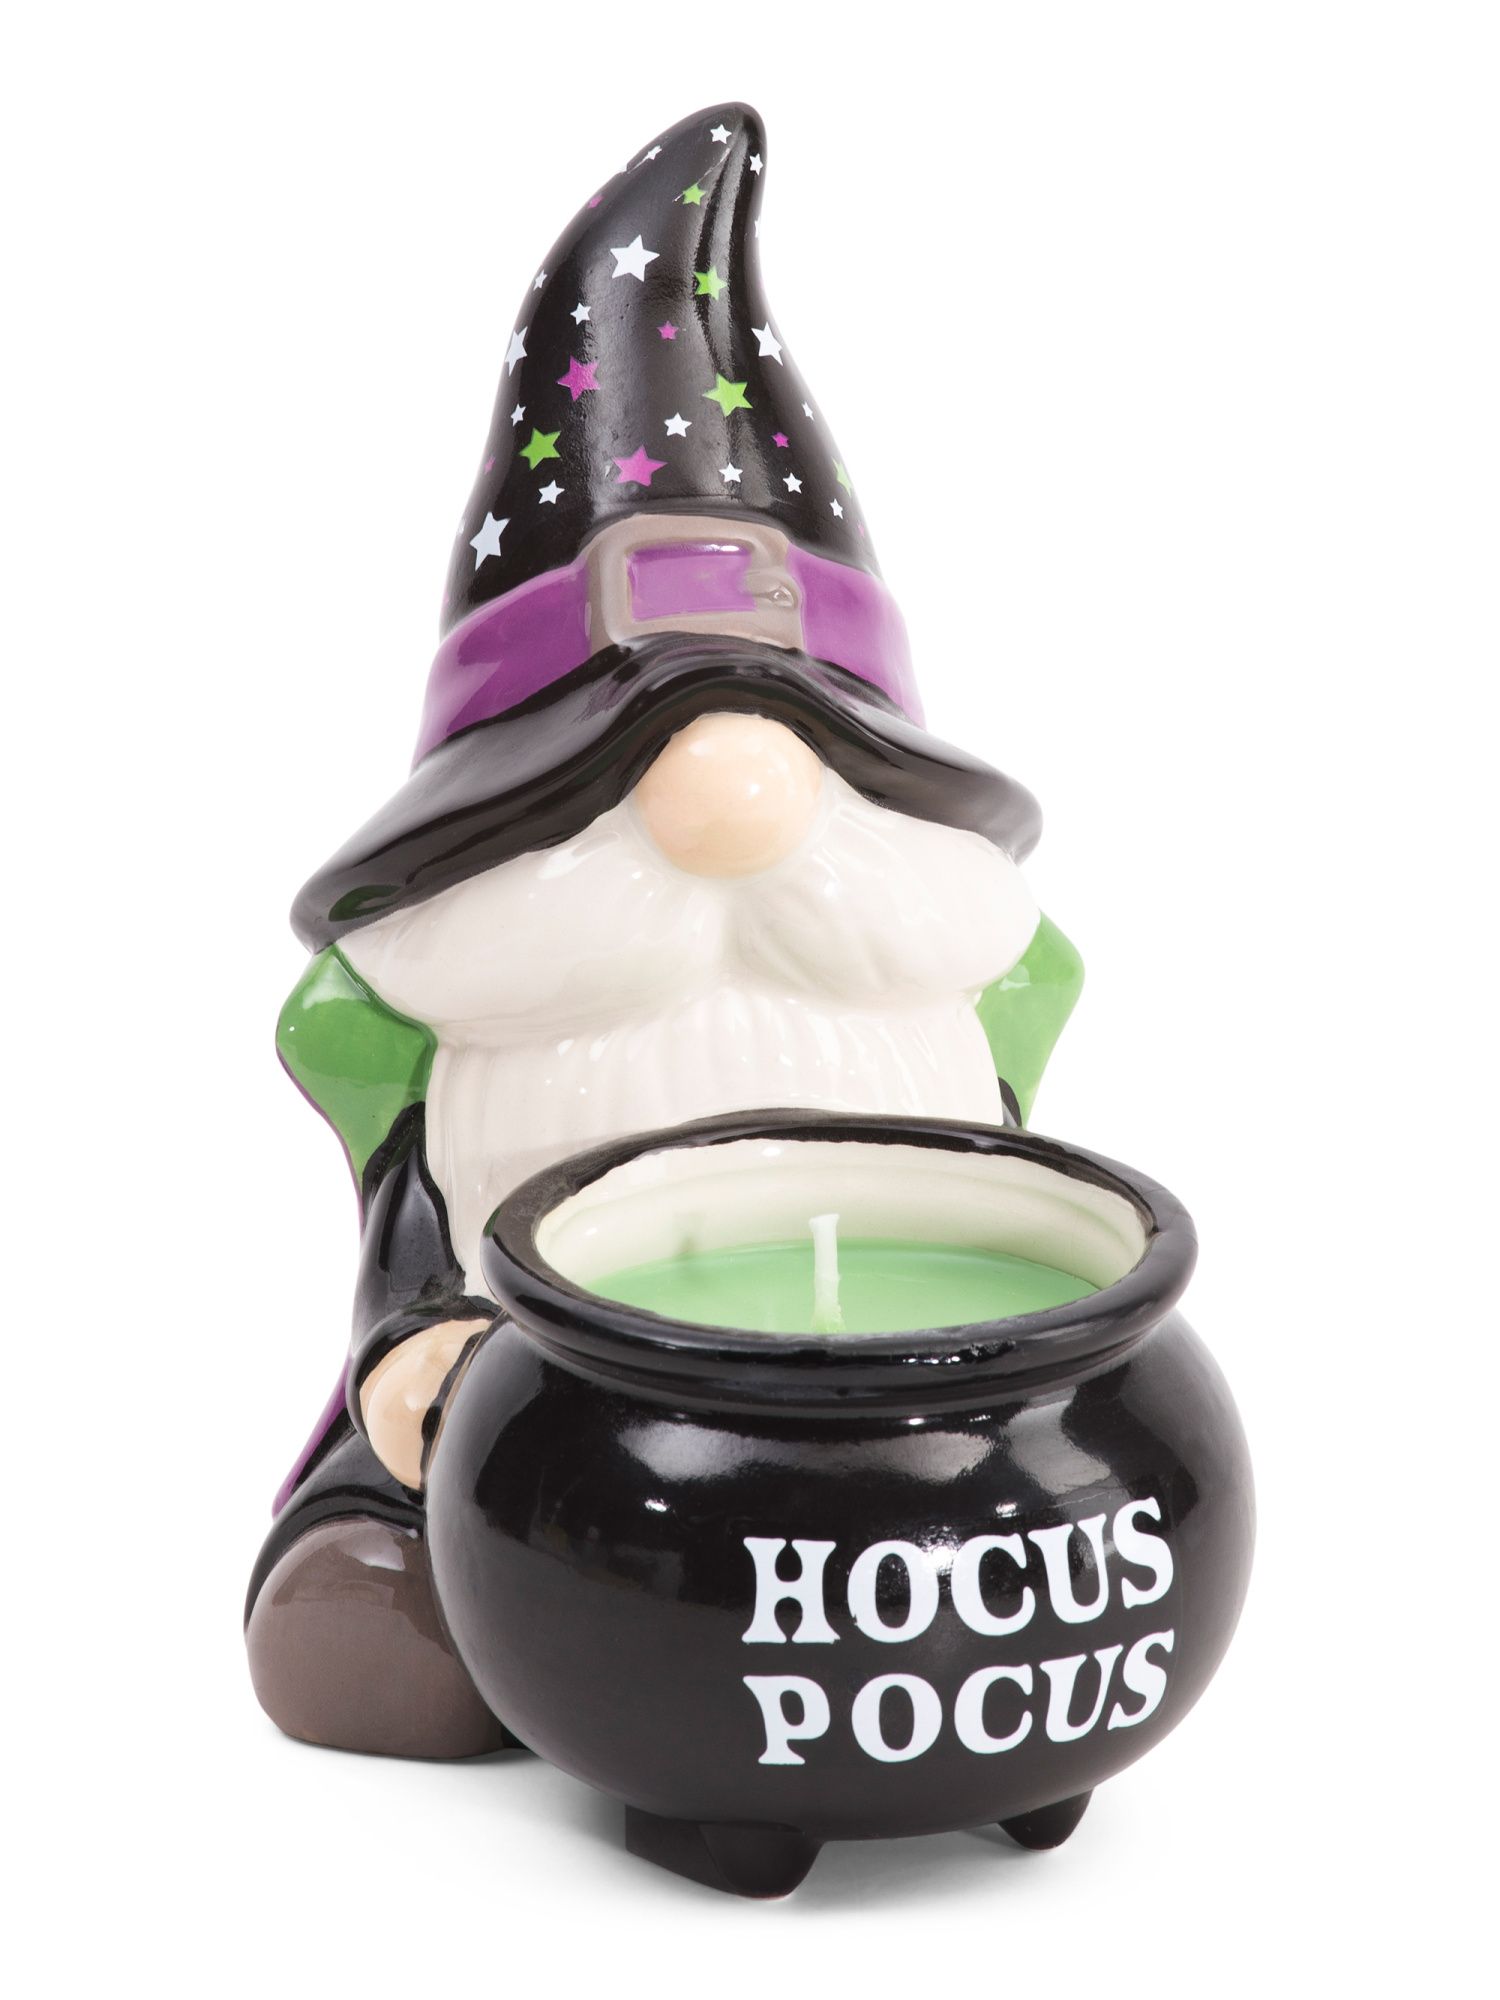 8oz Hocus Pocus Witch Gnome Candle | TJ Maxx